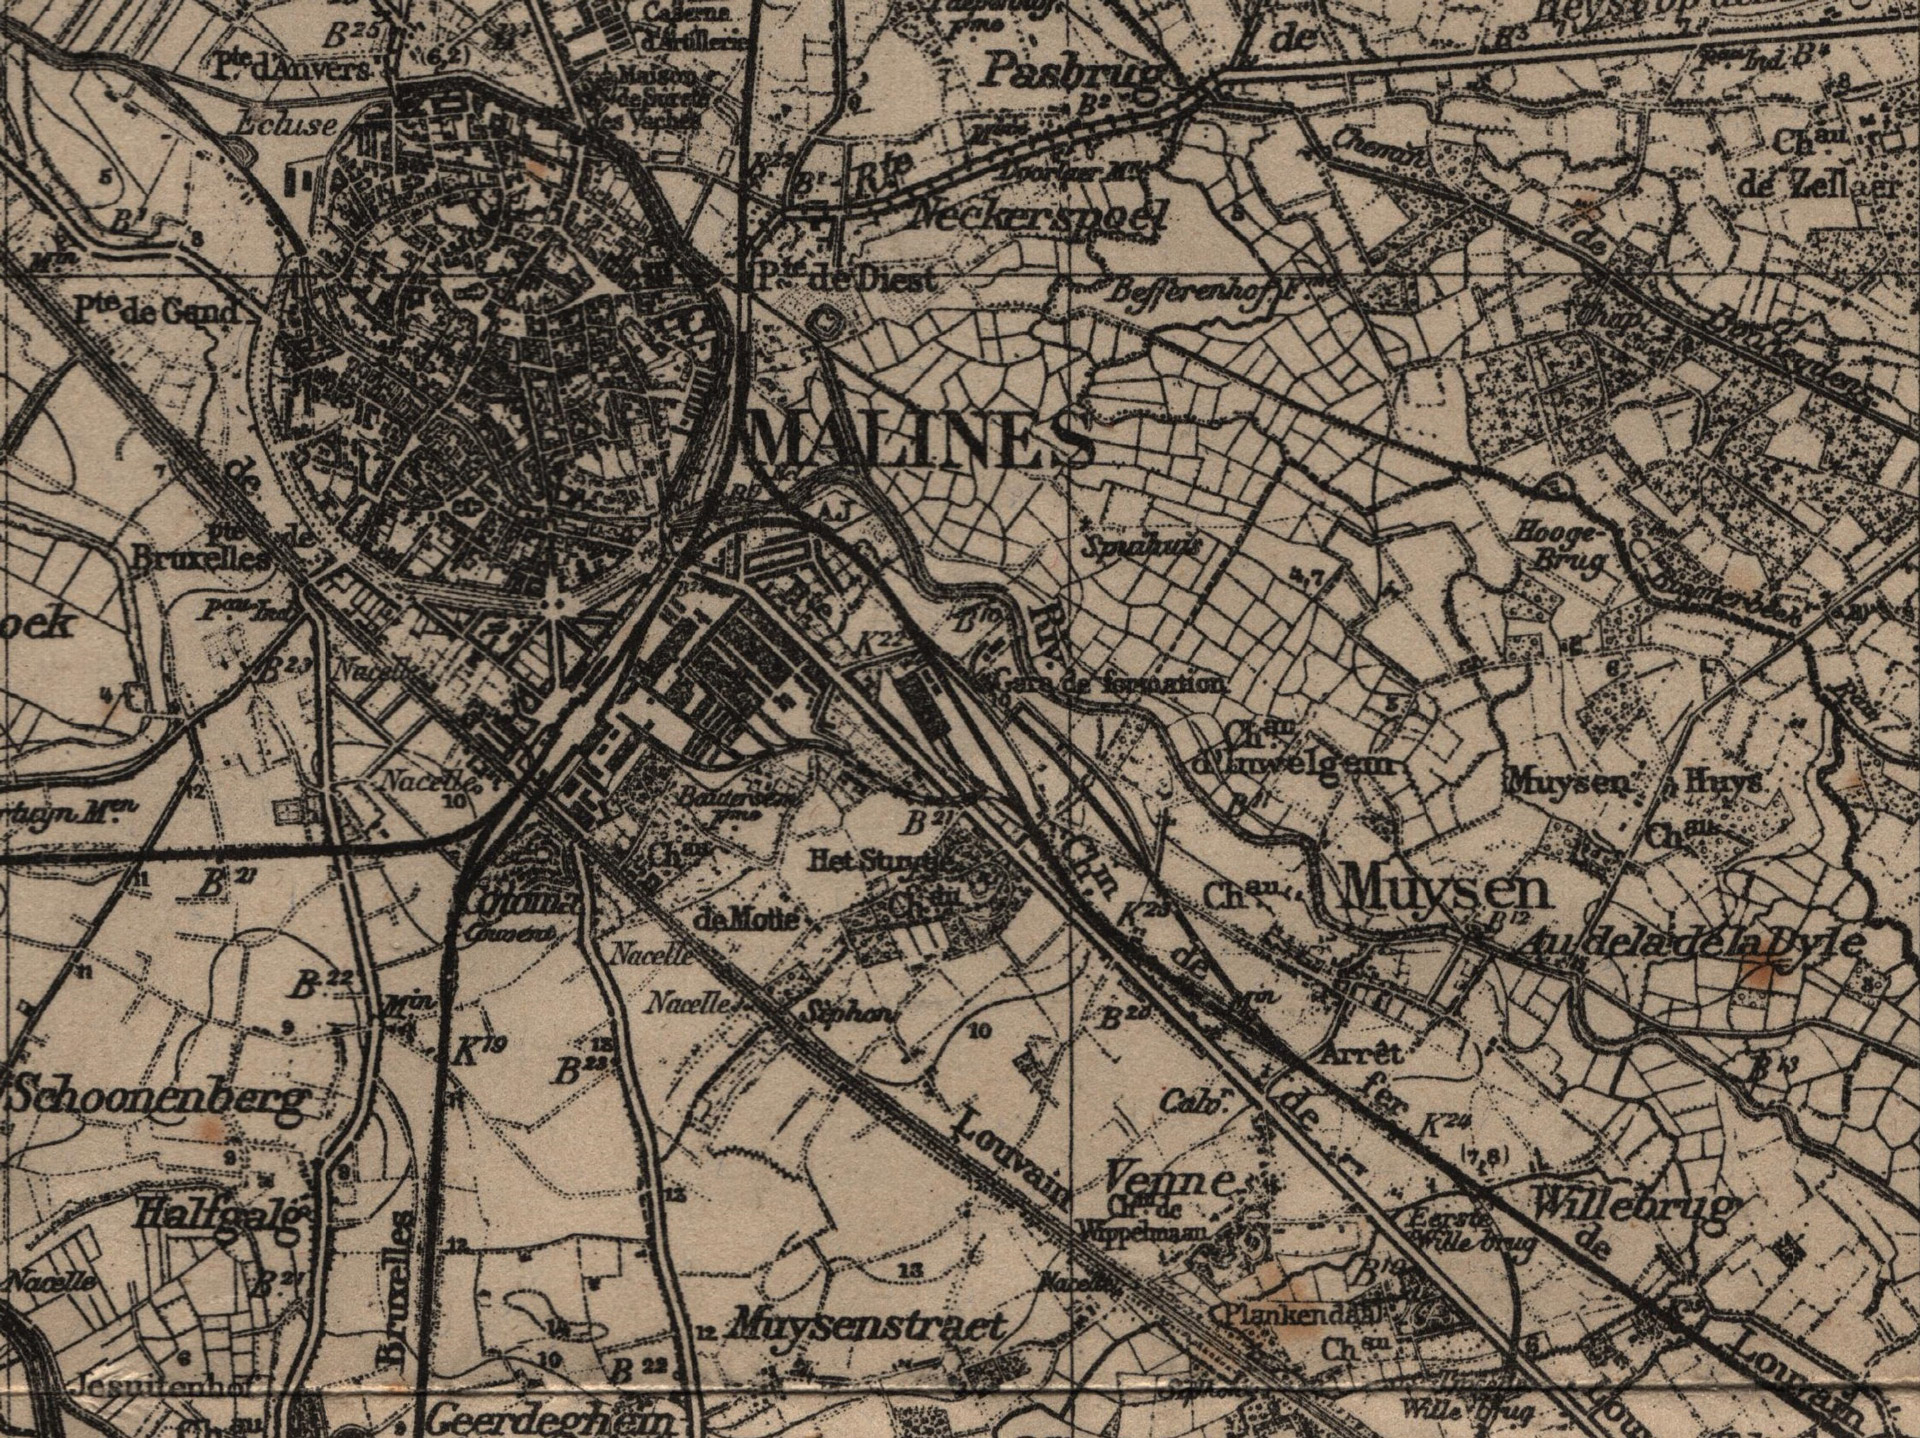 Carte topographique de Malines et Muizen (1915) : la propriété de Jeanne Van Delft, au bord de la Dyle, est indiquée « Chau » à gauche de « Muyzen » │ Belgien - 1 :60.000 - Malines 23 │ col. pdgit1918